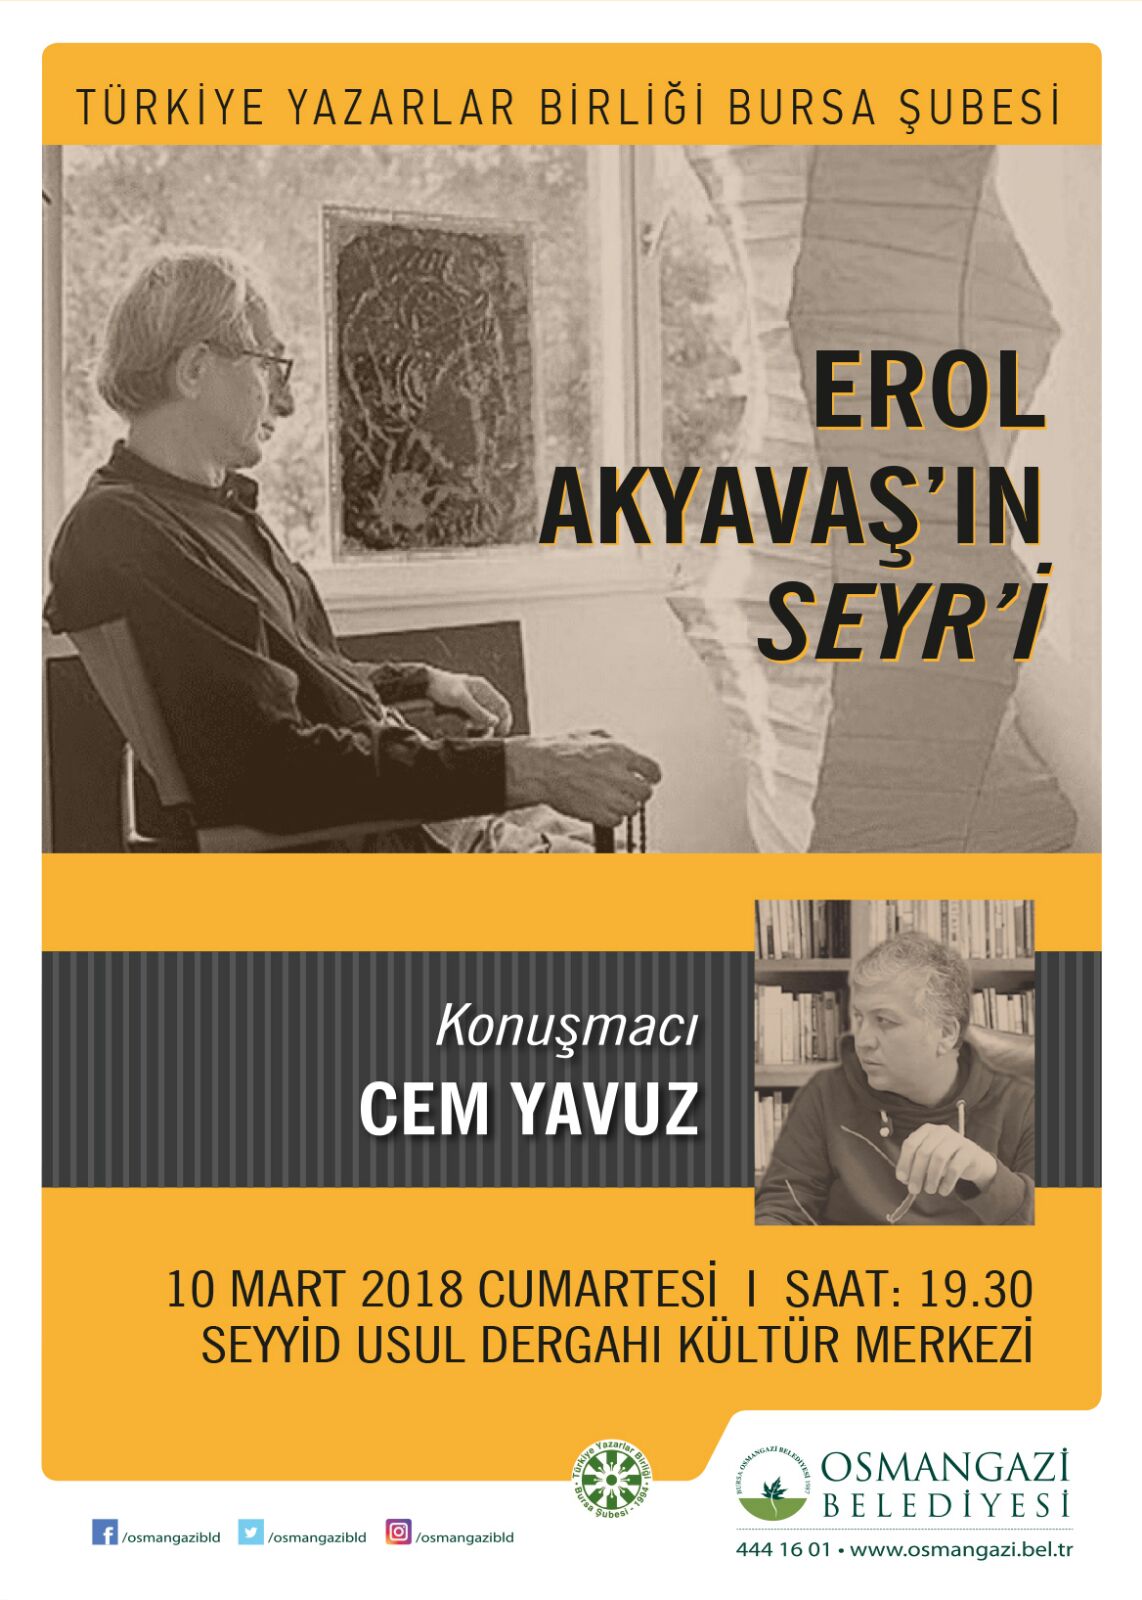 Bursa Şubesi' nde Erol Akyavaş'ın Seyr'i Programı